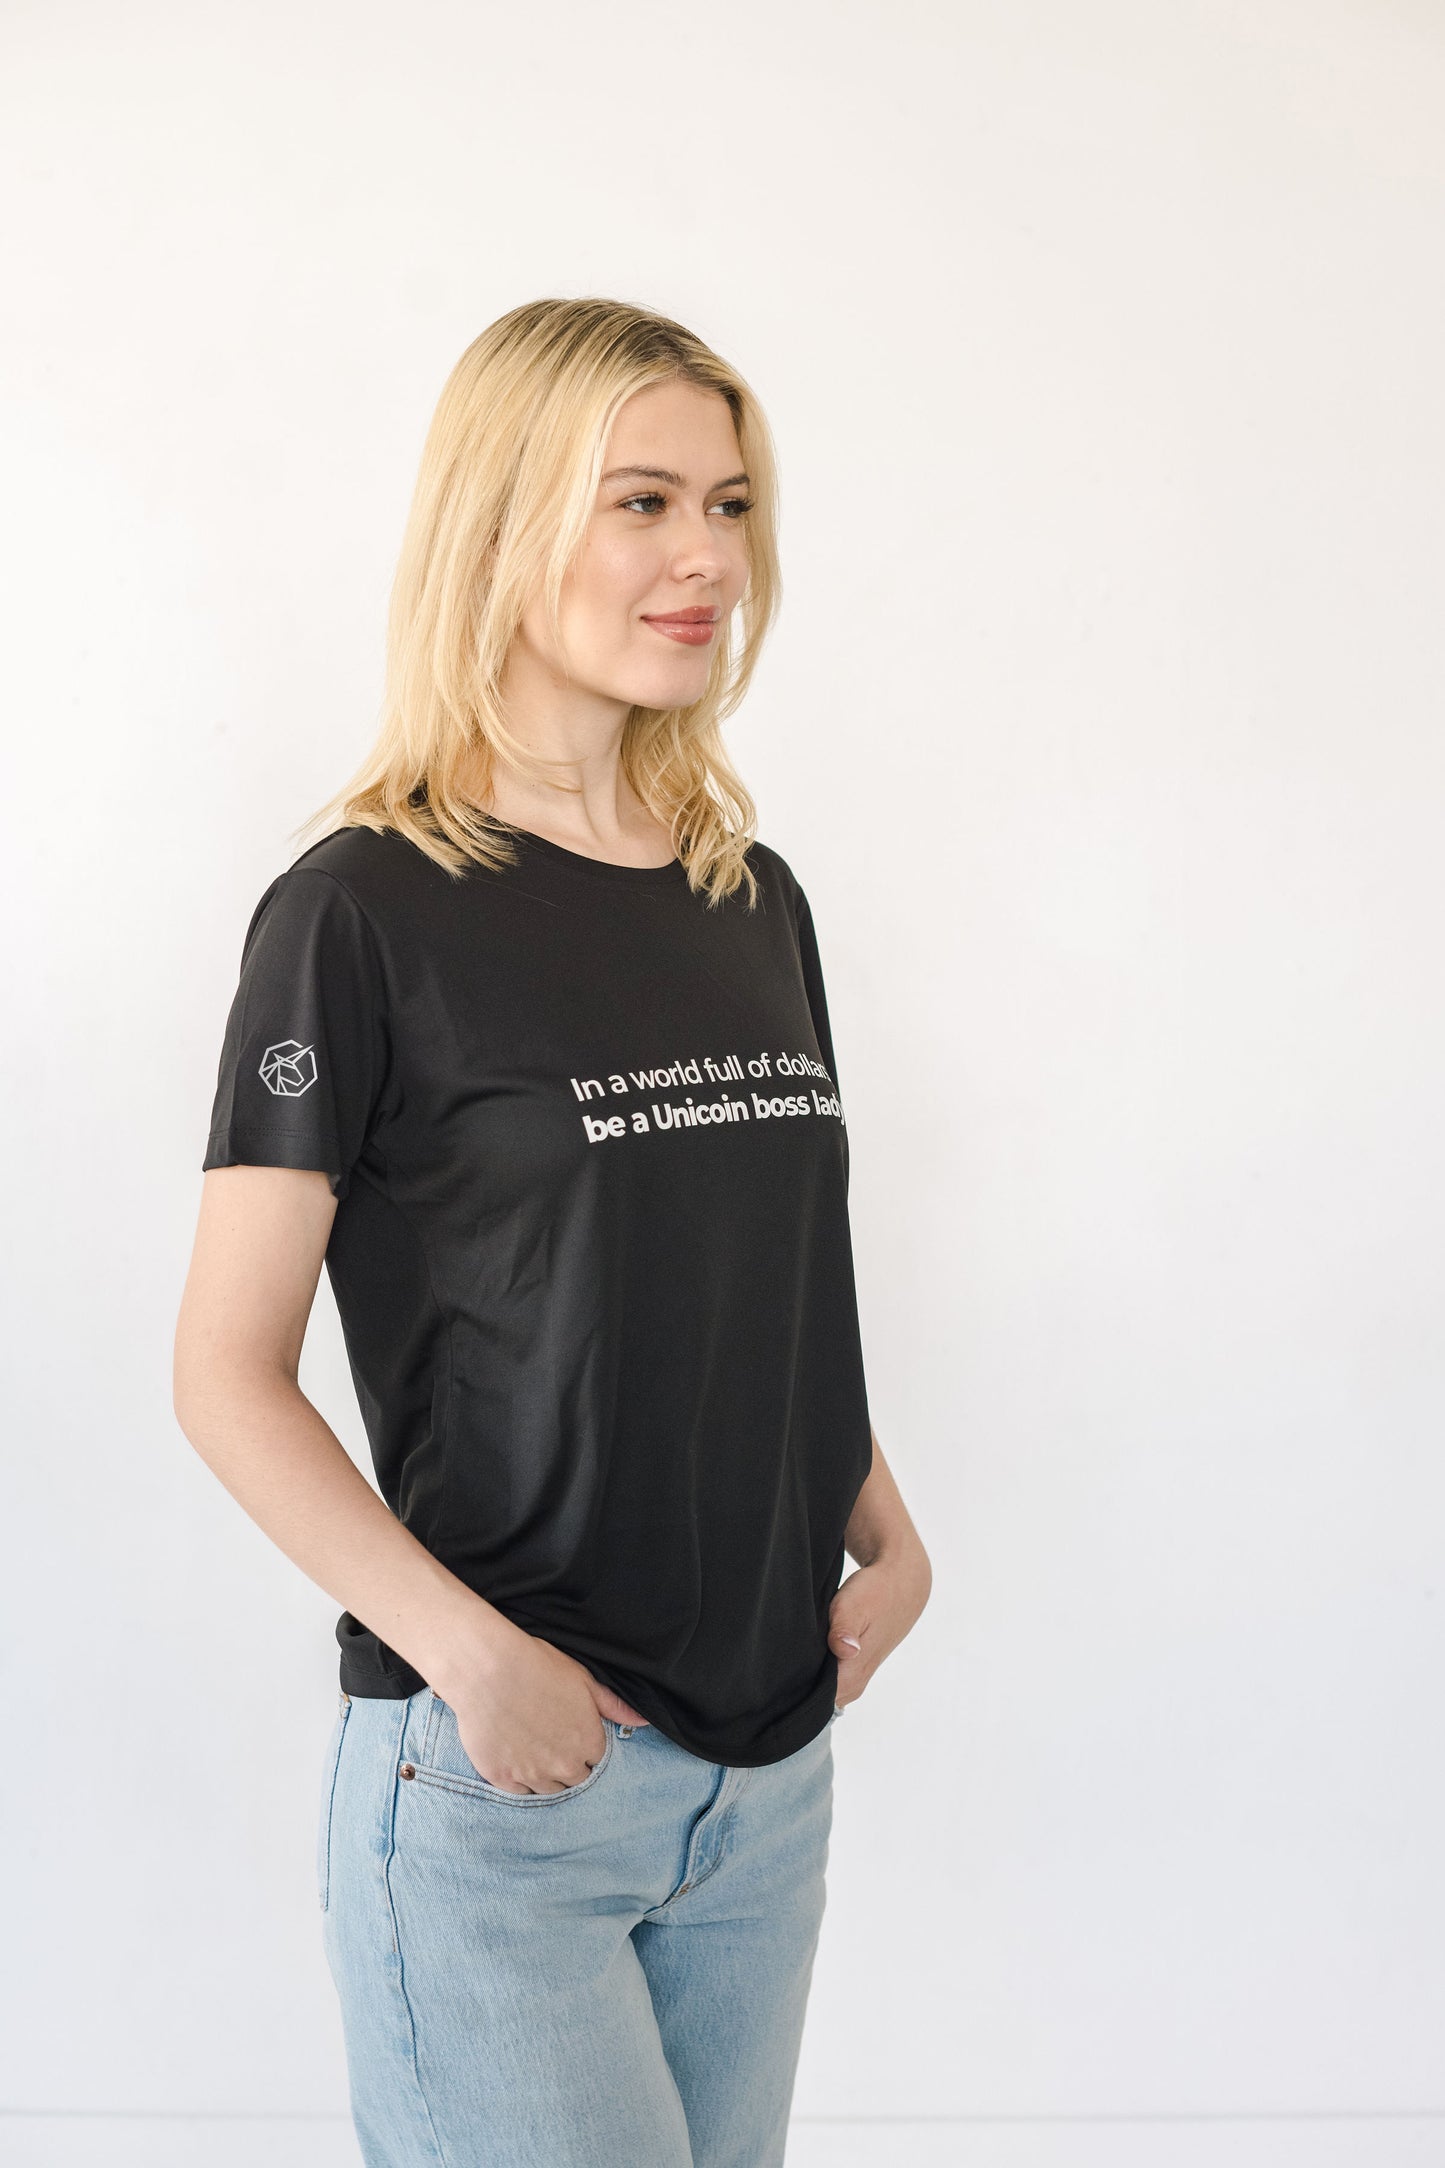 Unicoin Boss Lady T-shirt